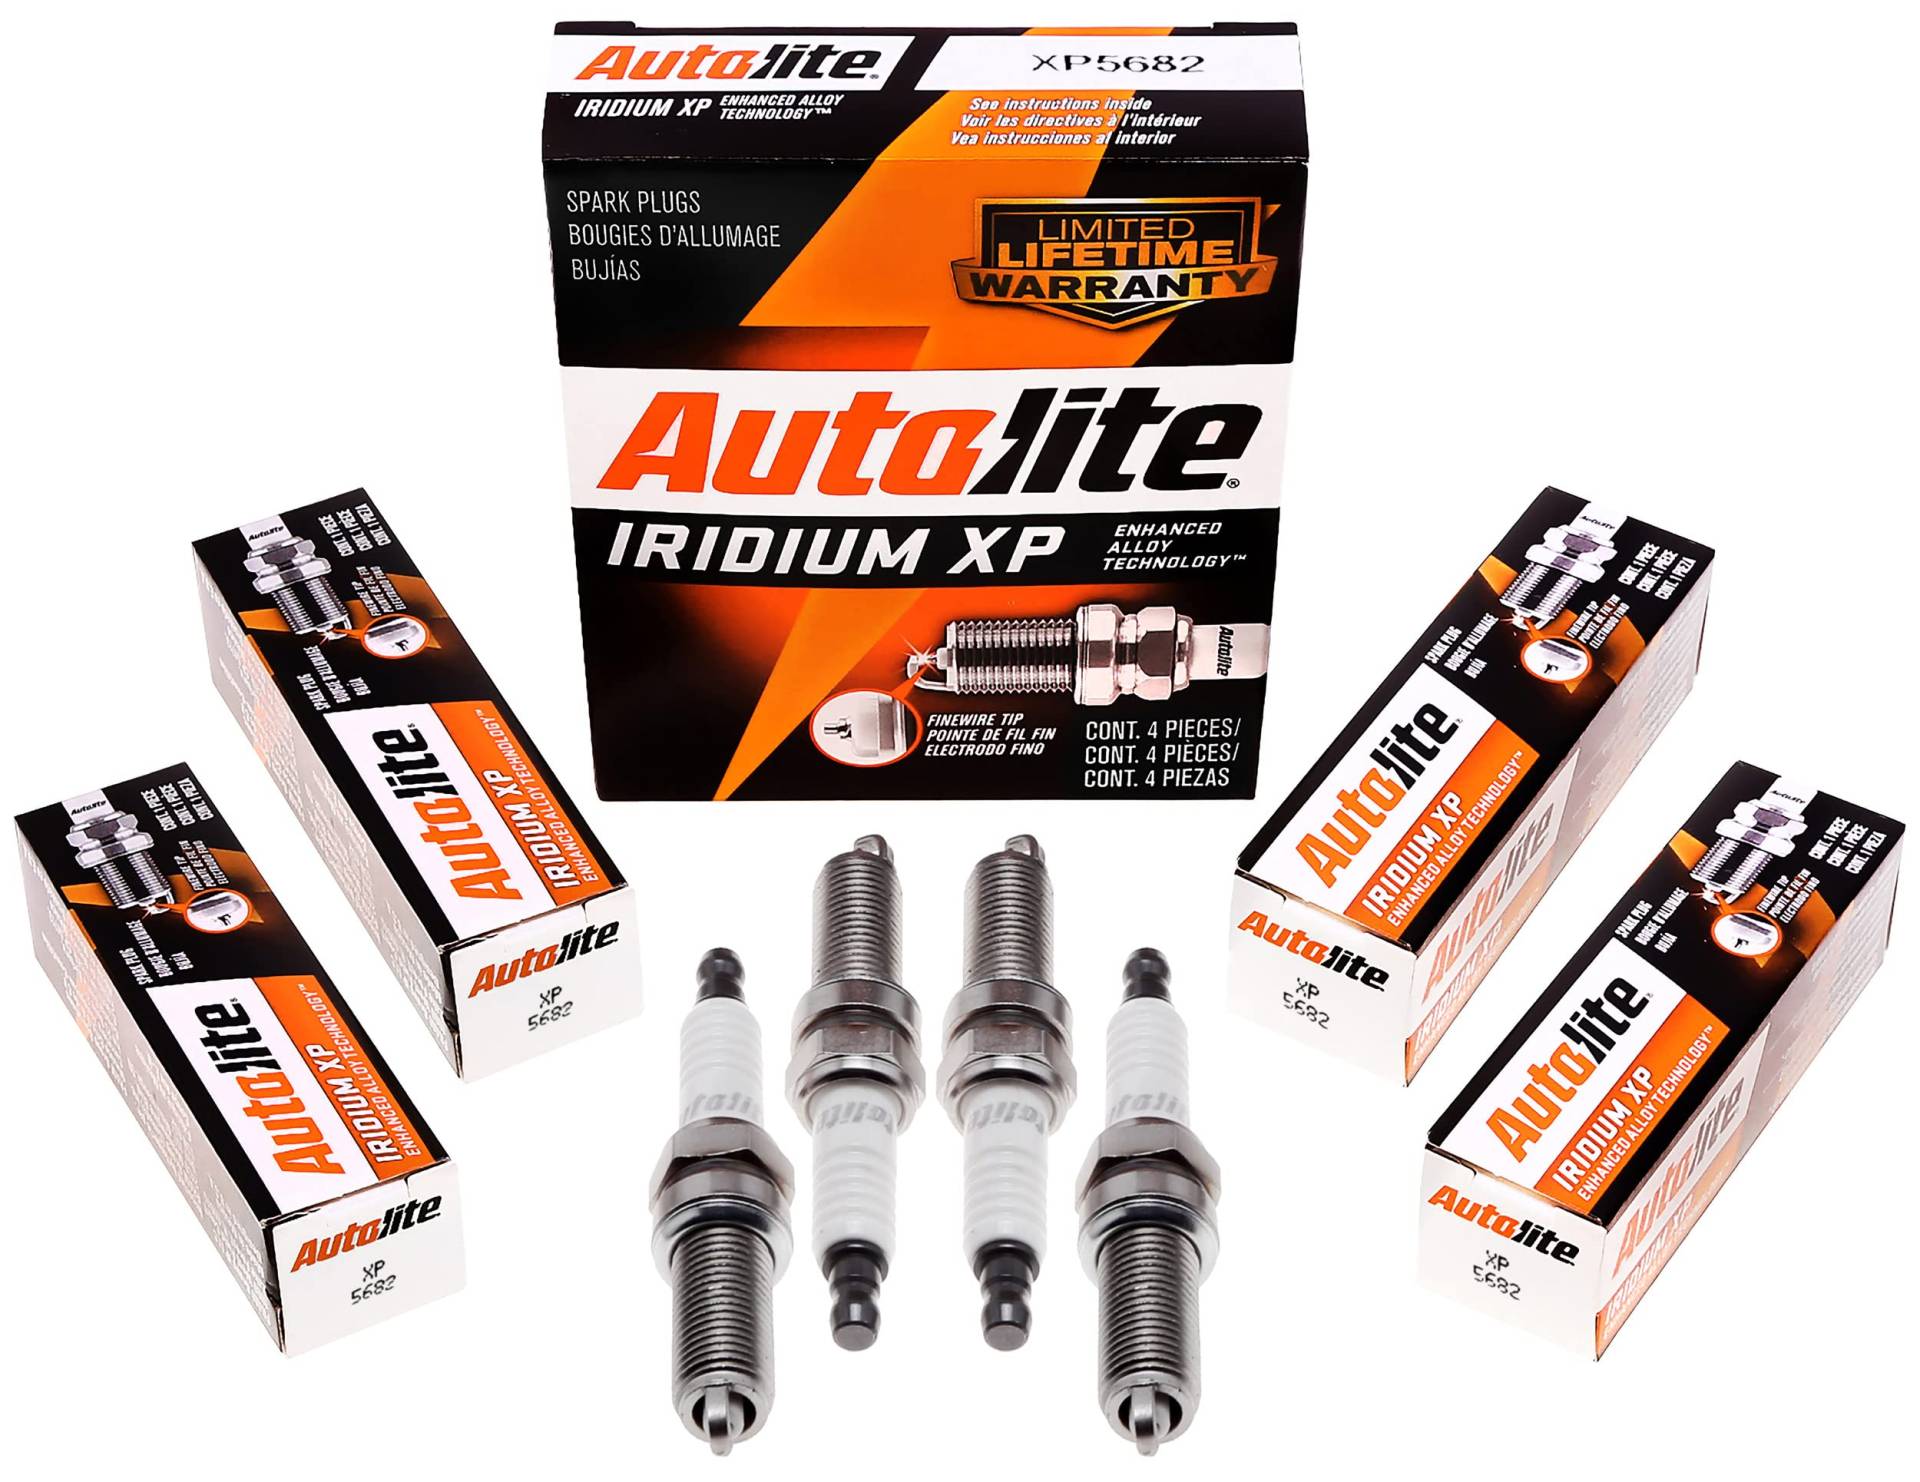 Autolite Iridium XP Automotive Ersatz-Zündkerzen, XP5682, 4 Stück von Autolite